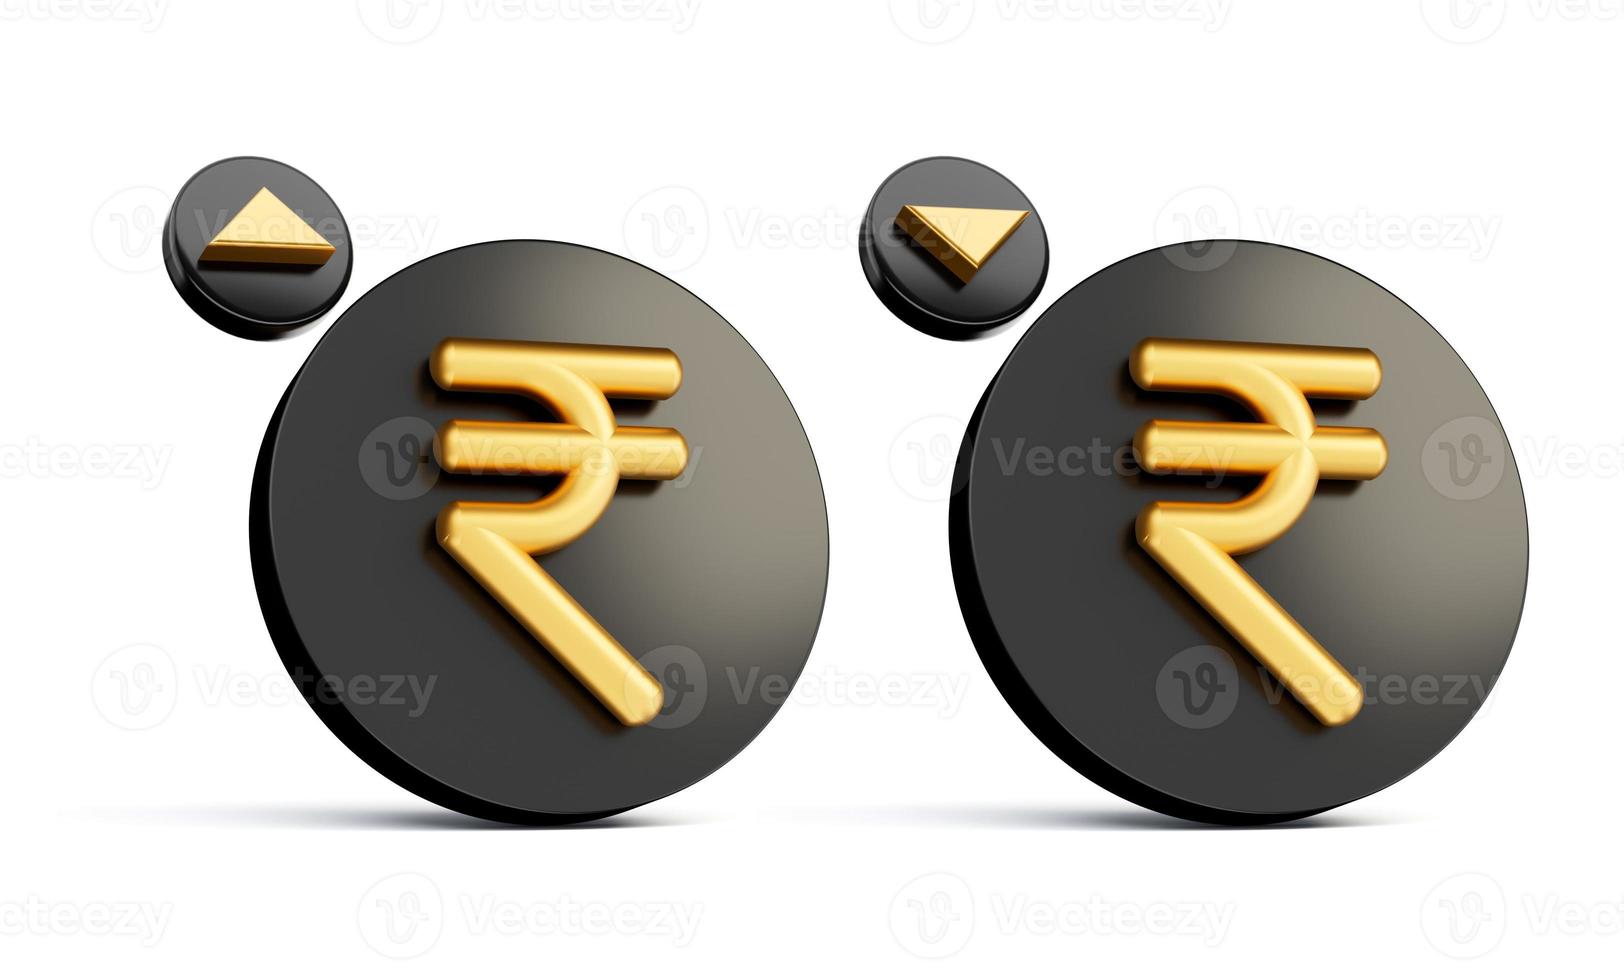 indisk rupee symbol guld och svart isolerat på vit bakgrund 3d illustration foto